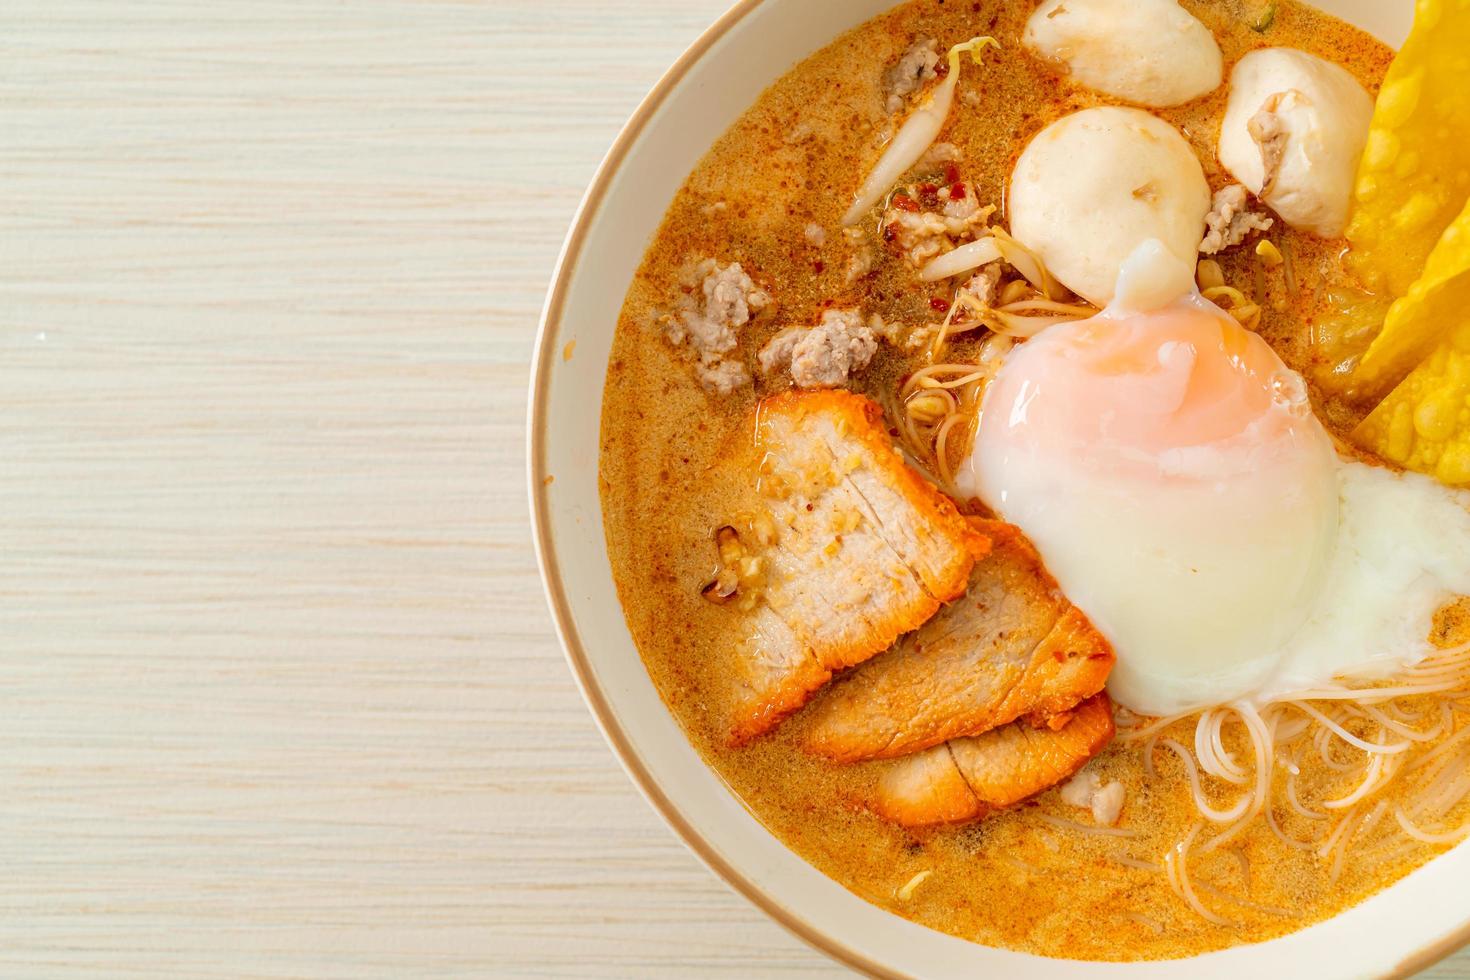 ris vermicellinudlar med köttbulle, rostat fläsk och ägg i kryddig soppa foto